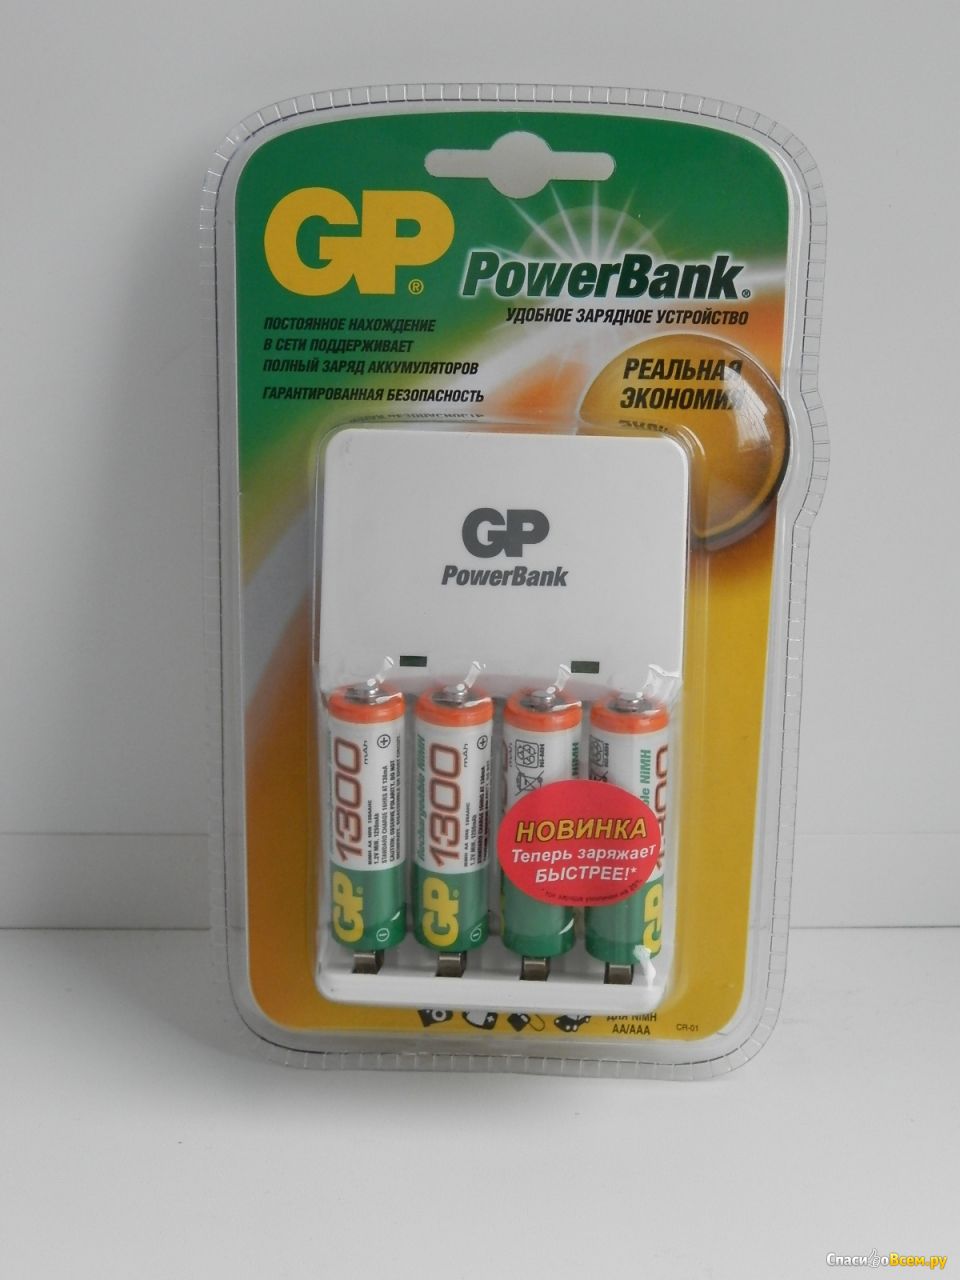 Отзыв про  устройство GP PowerBank GPKB01GS: 